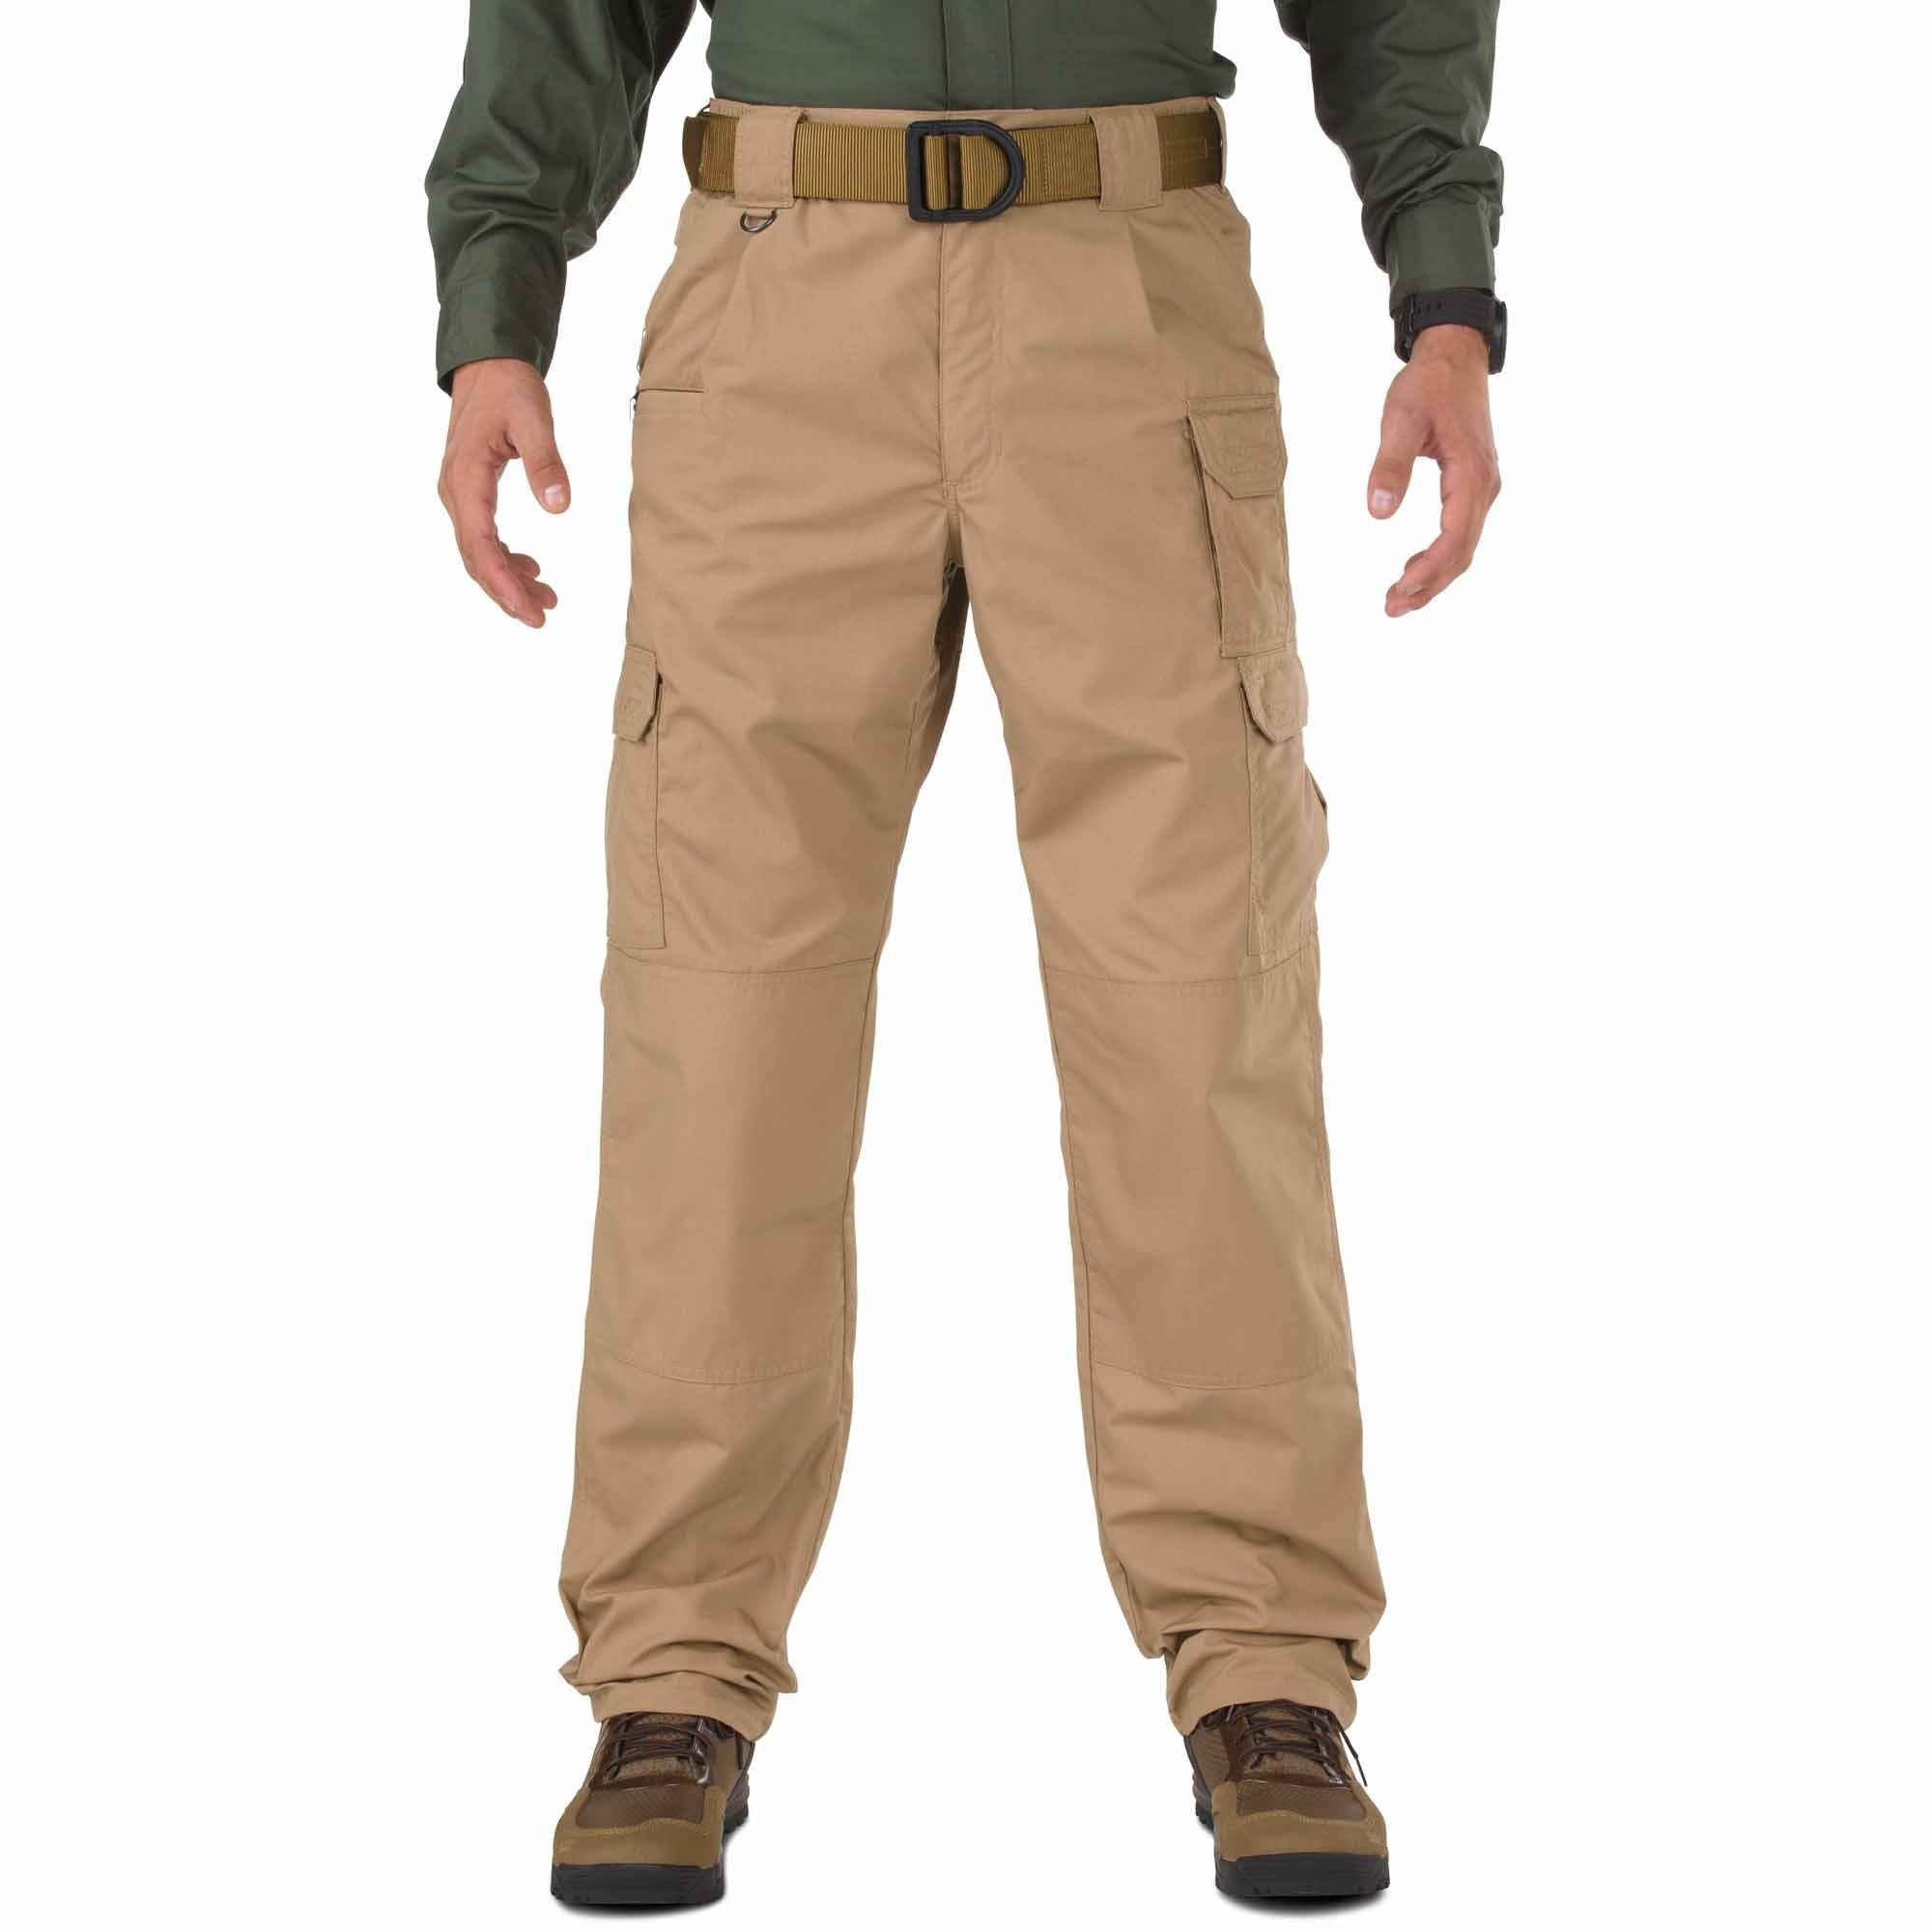 5.11 Tactical Taclite Pro Pants - Coyote Pants 5.11 Tactical Tactical Gear Supplier Tactical Distributors Australia